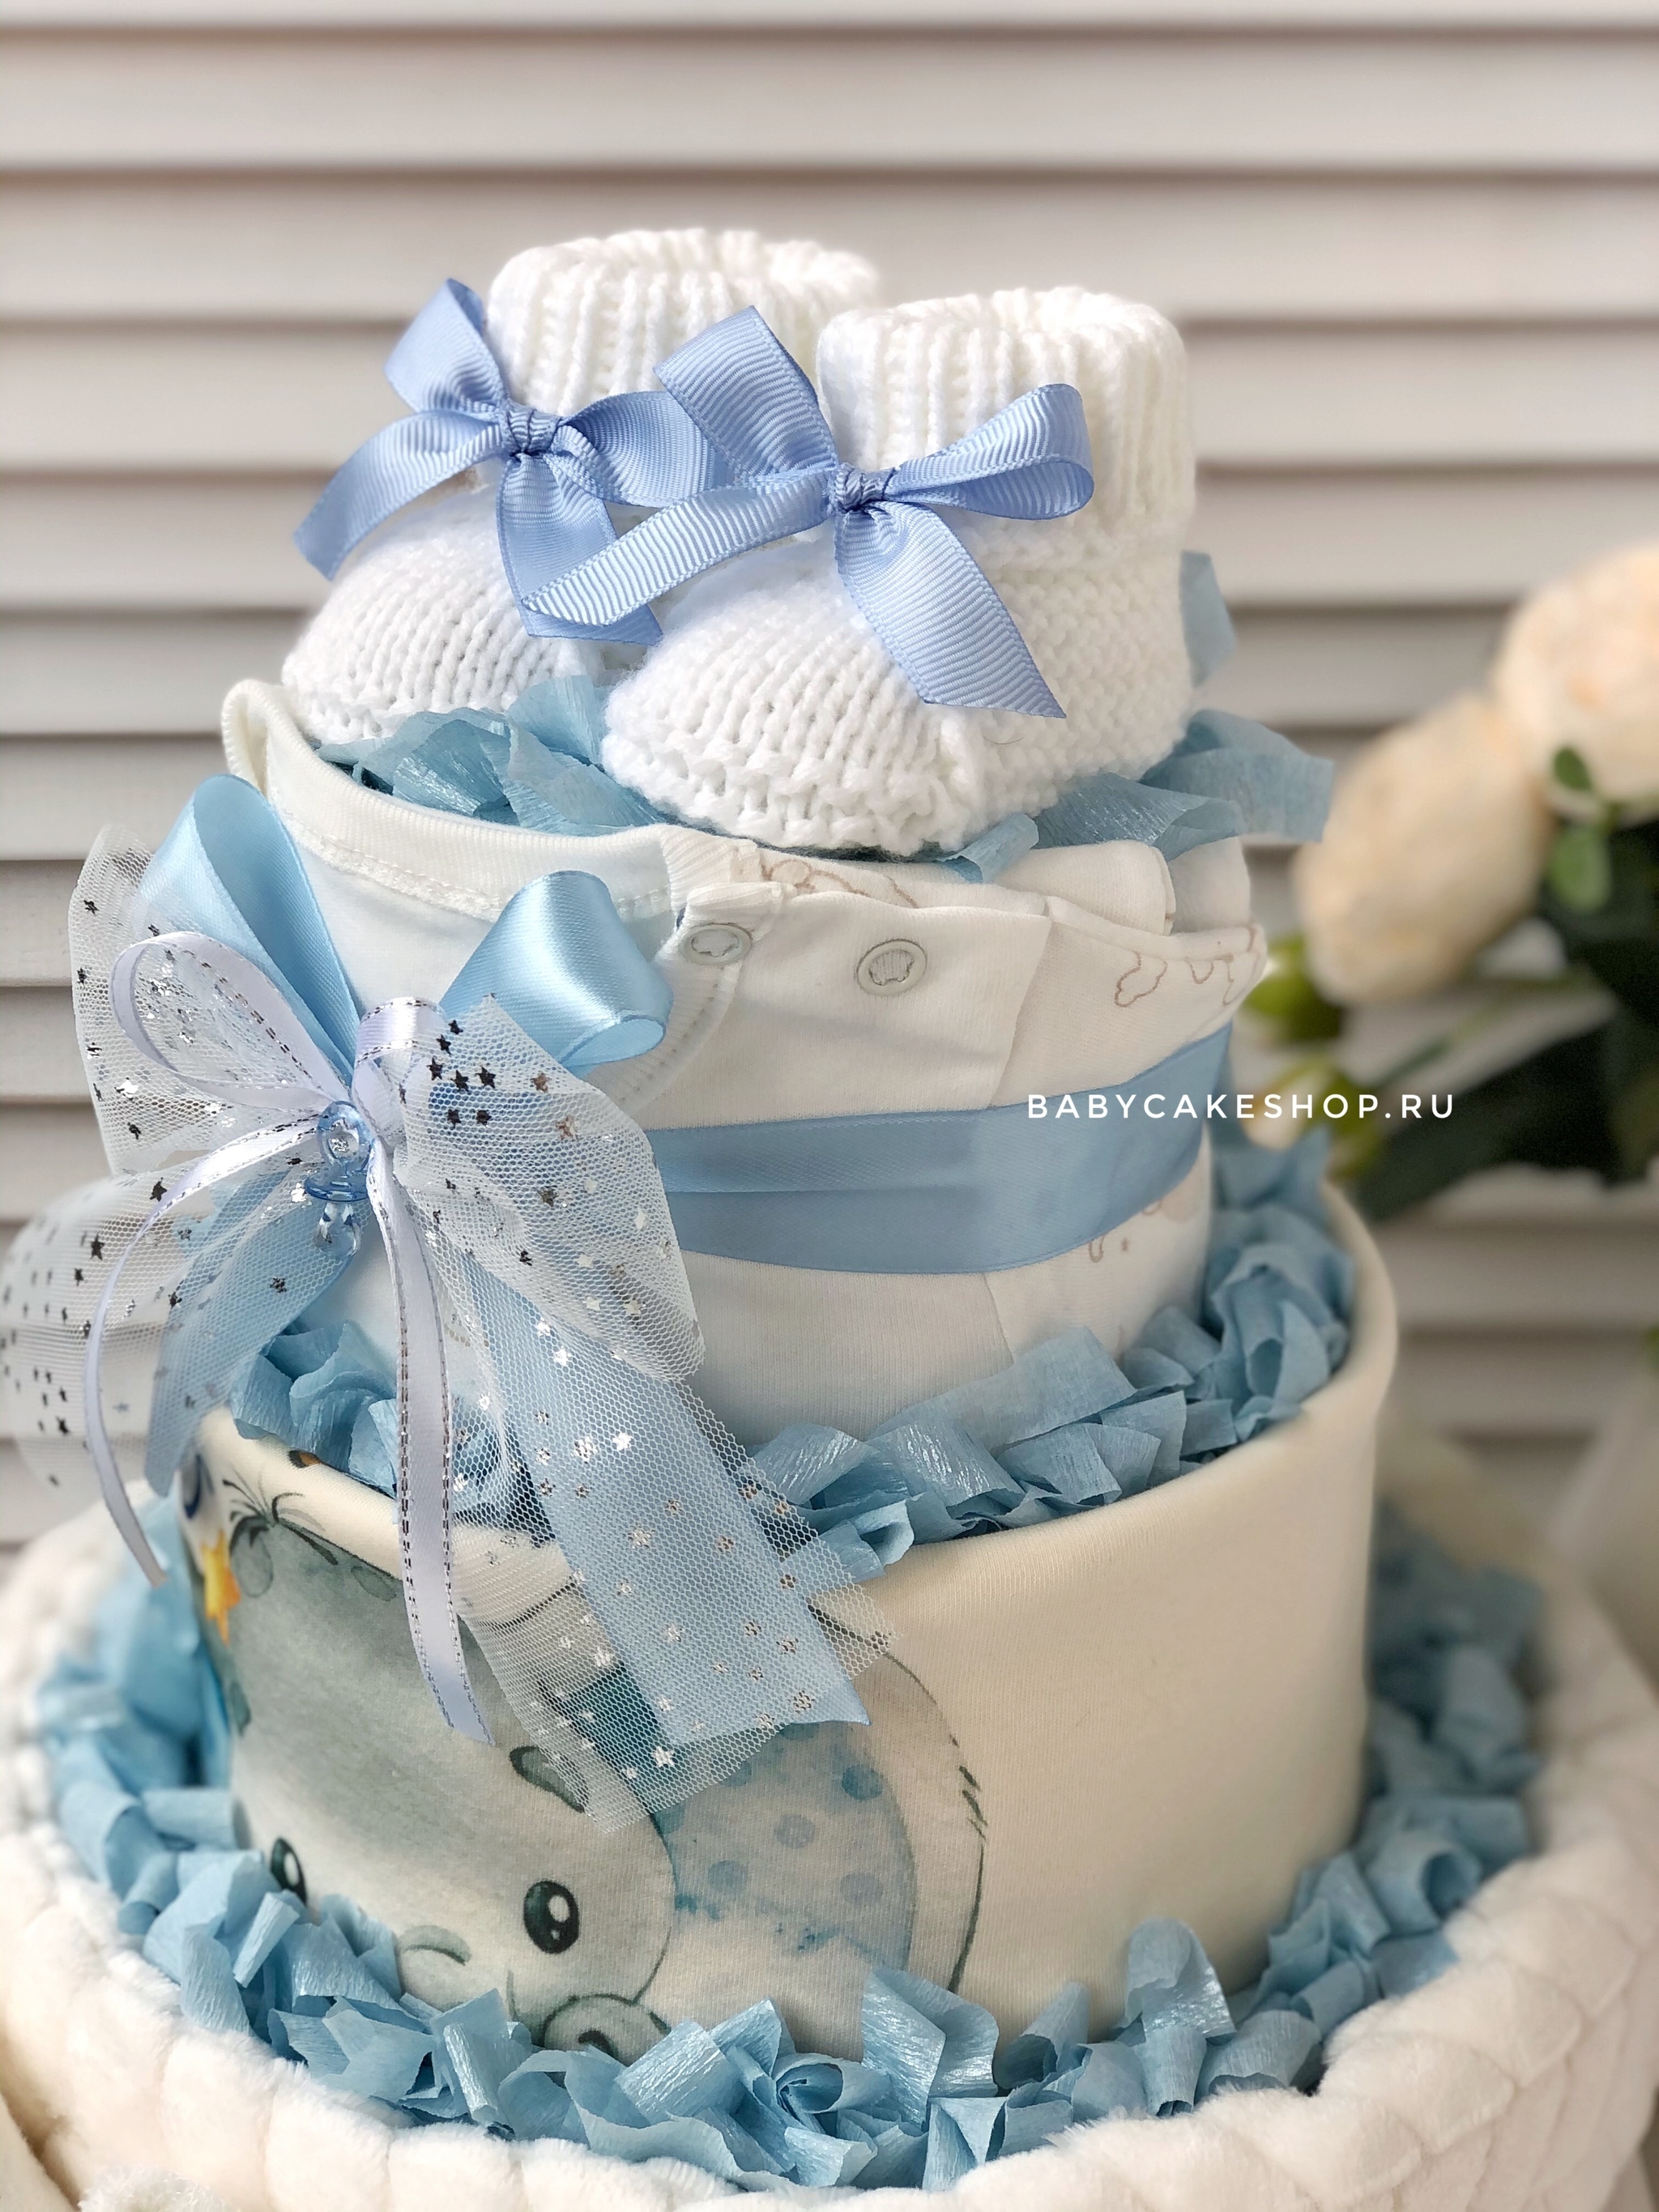 Торт из подгузников - Идеальный подарок на рождение ребенка - Поколдзия